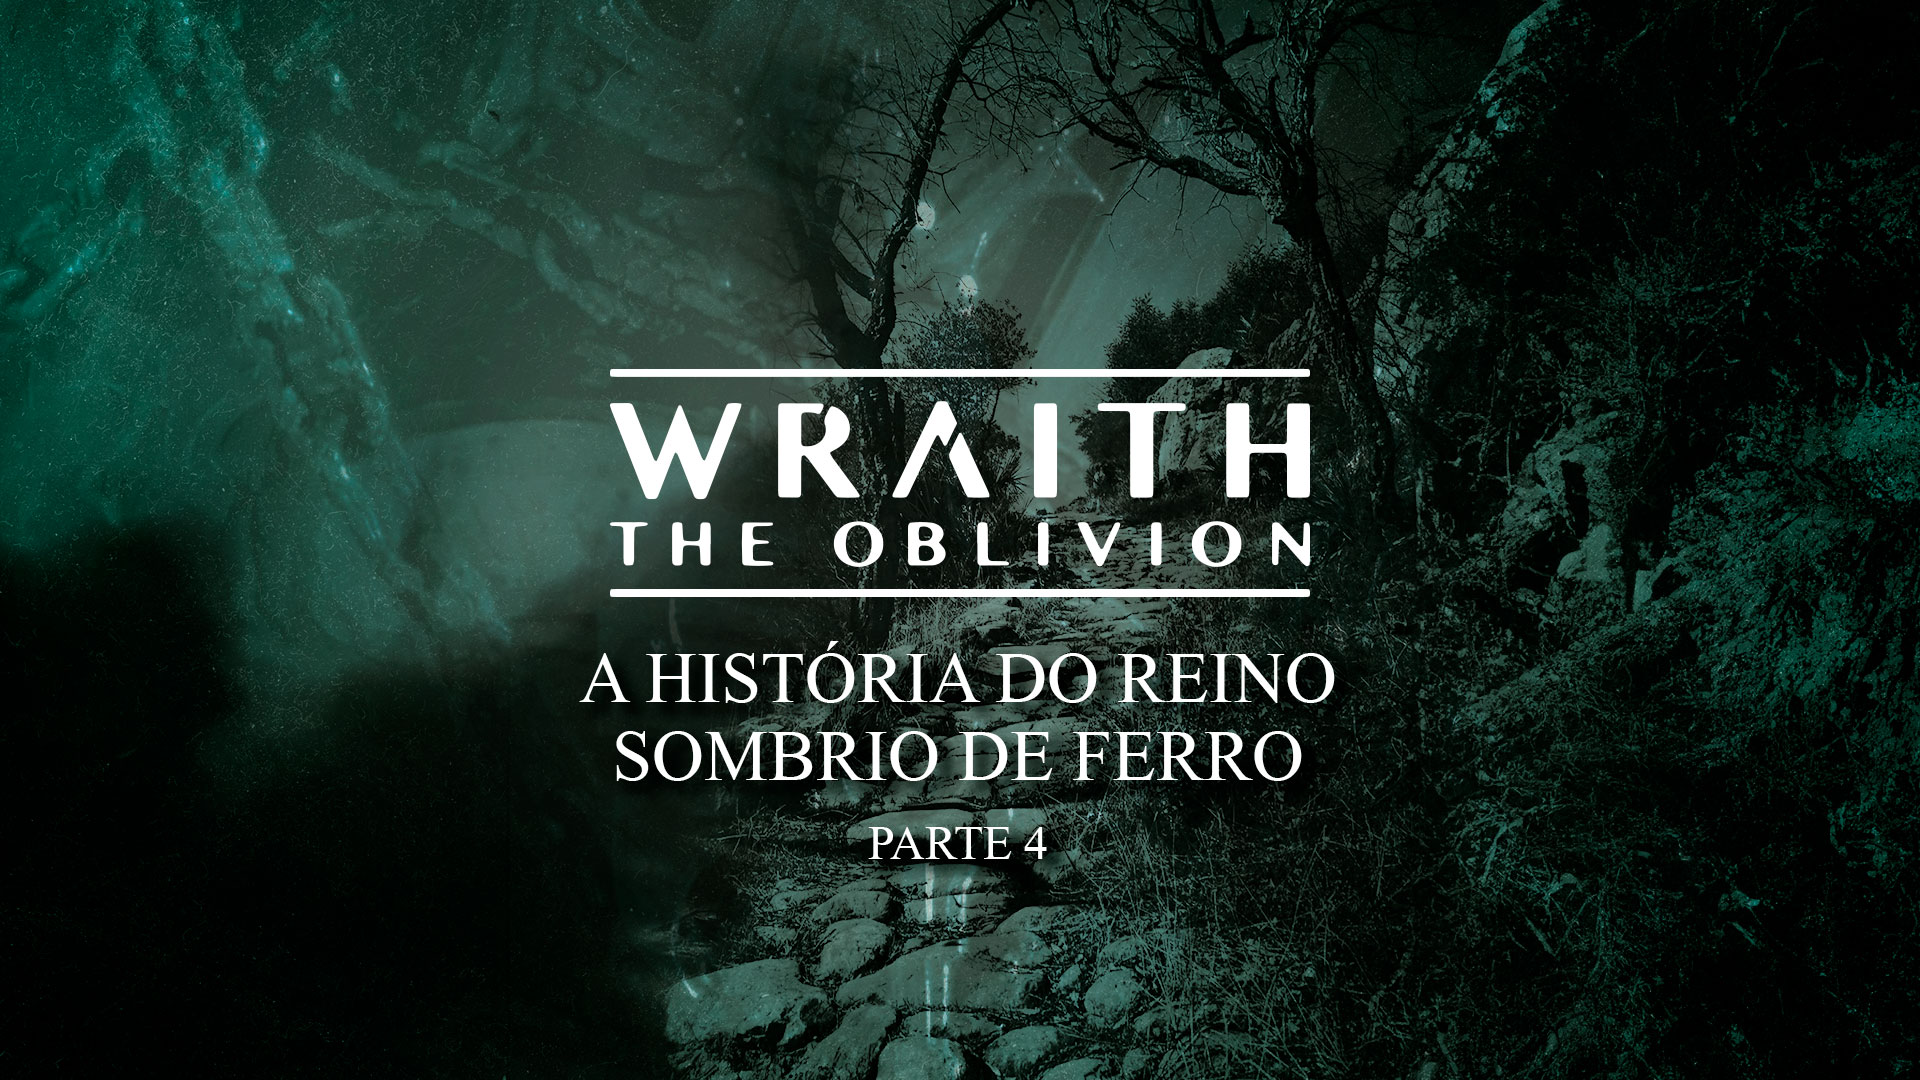 A História do Reino Sombrio de Ferro: Parte 4 – Histórias de Wraith